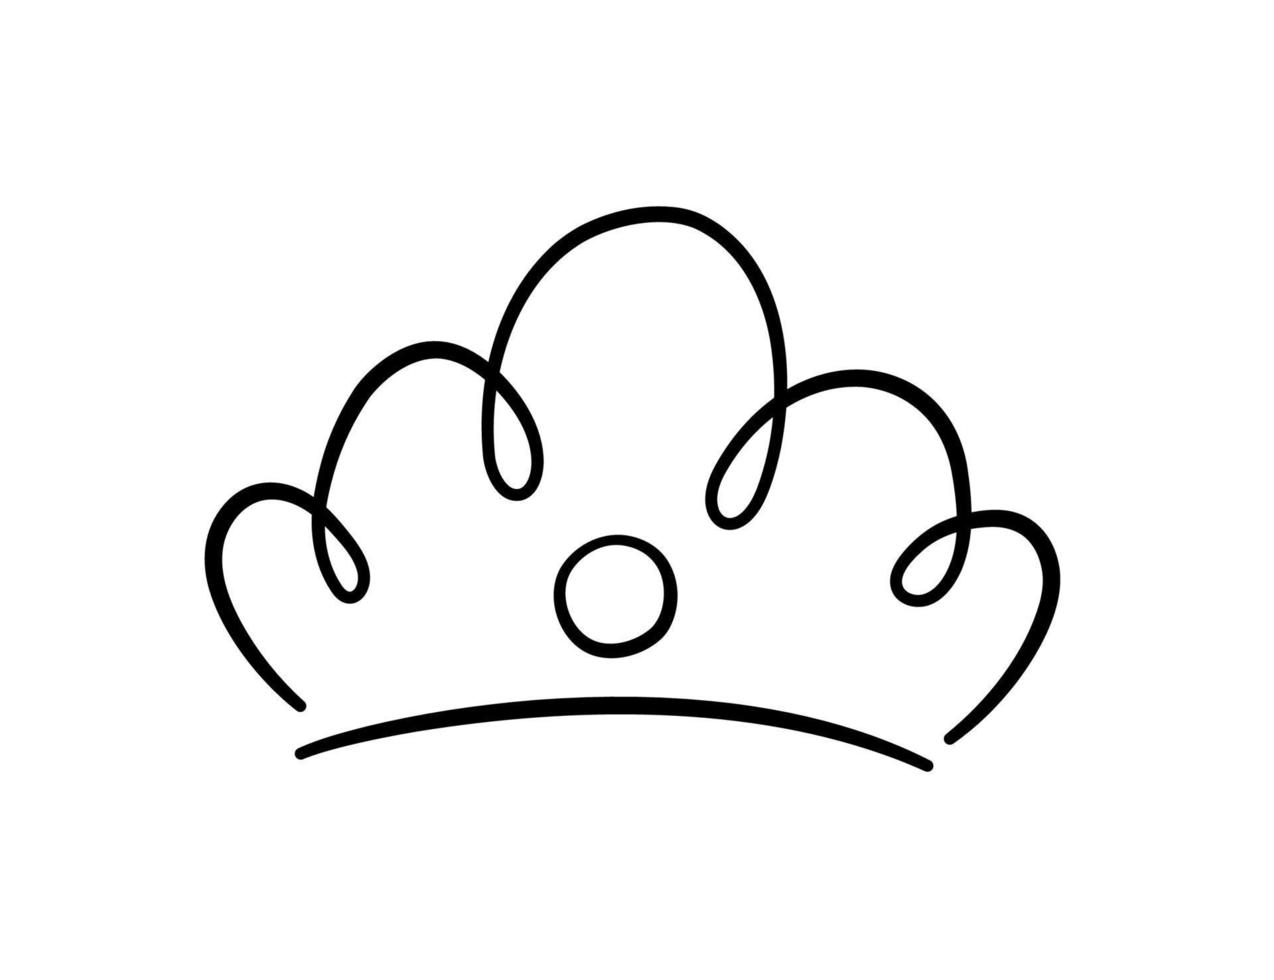 corona di doodle disegnato a mano. schizzo della corona del re. diadema maestoso. re e regina diadema reale. illustrazione vettoriale isolata in stile doodle su sfondo bianco